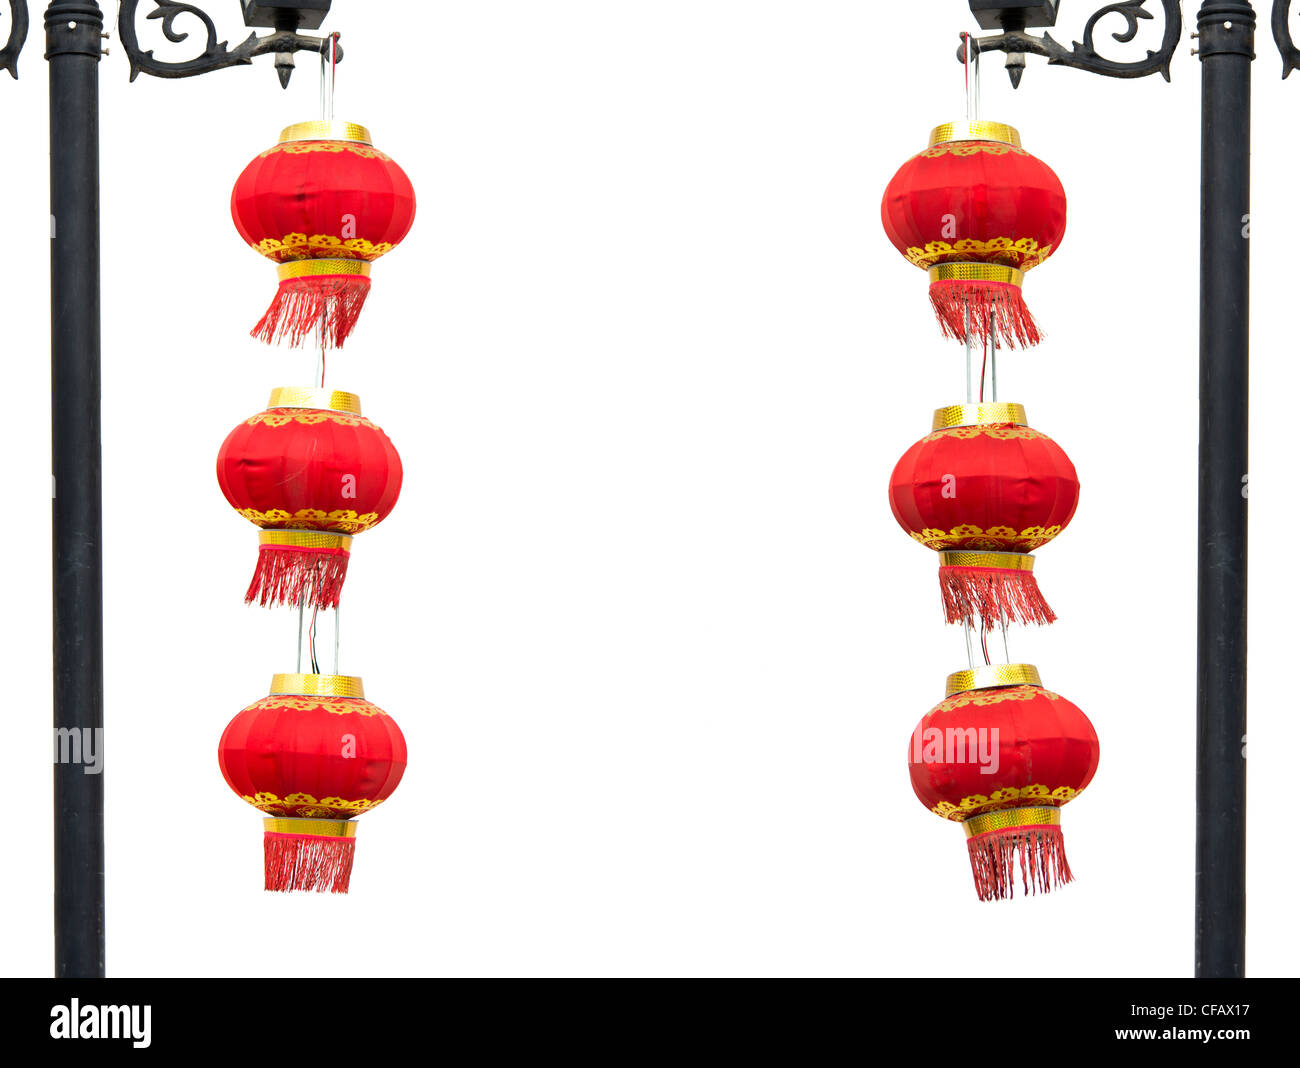 Dos grupos de chinos linterna roja colgando de farola en el fondo blanco.Adobe RGB guardado para un agradable color rojo mostrar Foto de stock